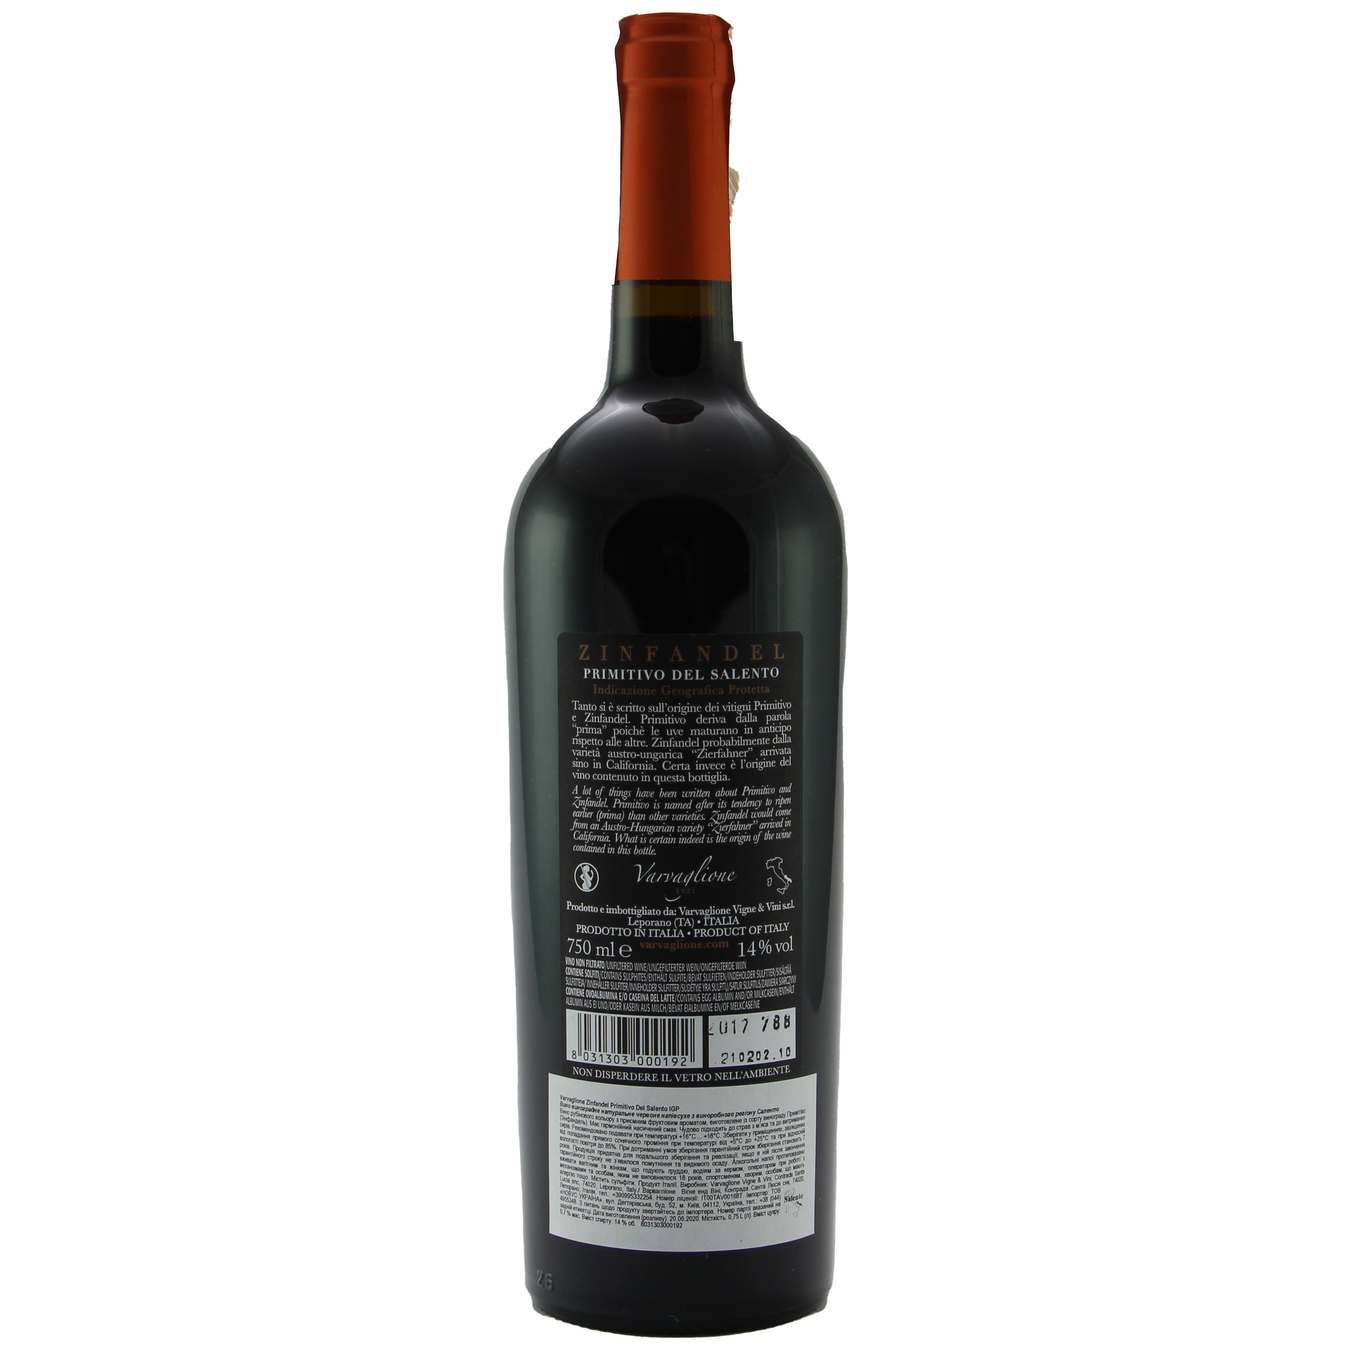 Вино Varvaglione Zinfandel Primitivo del Salento IGP красное полусладкое 14% 0,75л 2